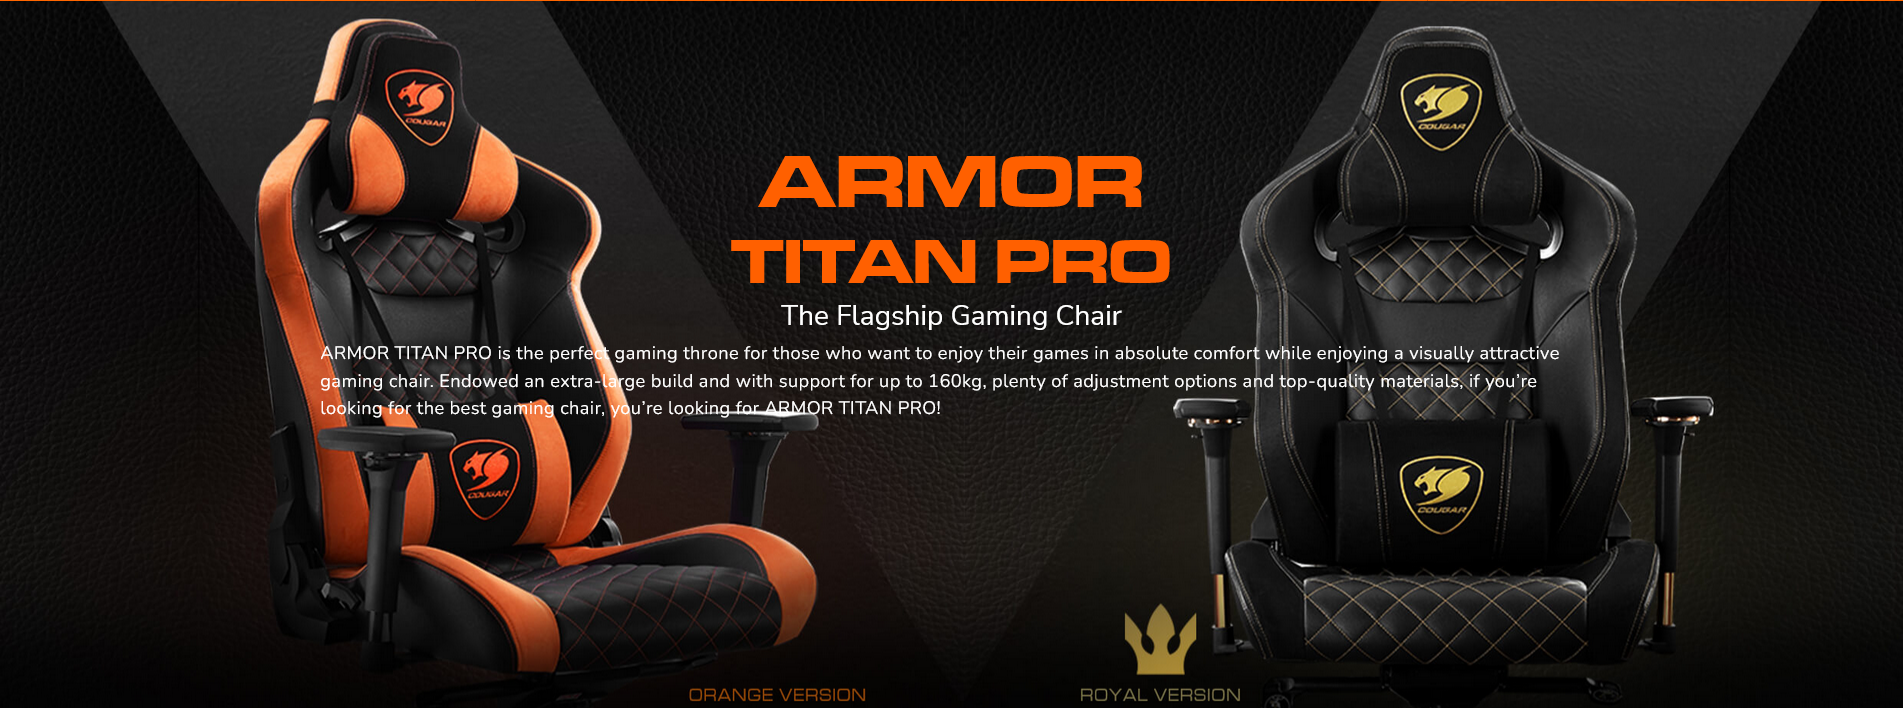 COUGAR ARMOR TITAN PRO ORANGE Gaming Chair - COUGAR ARMOR TITAN